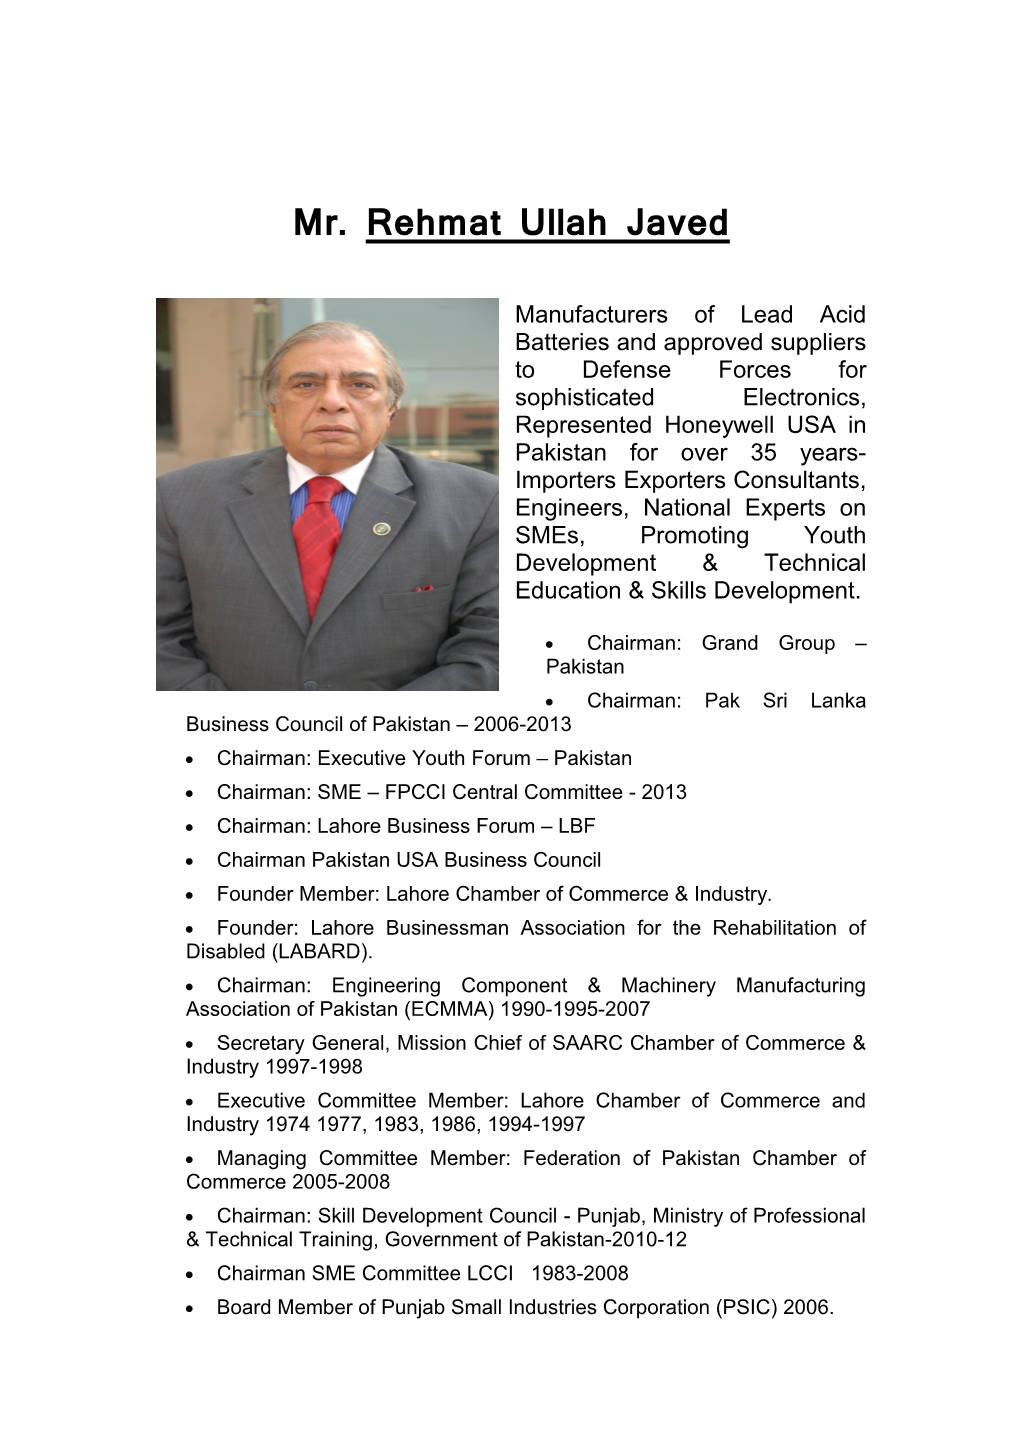 Mr. Rehmat Ullah Javed